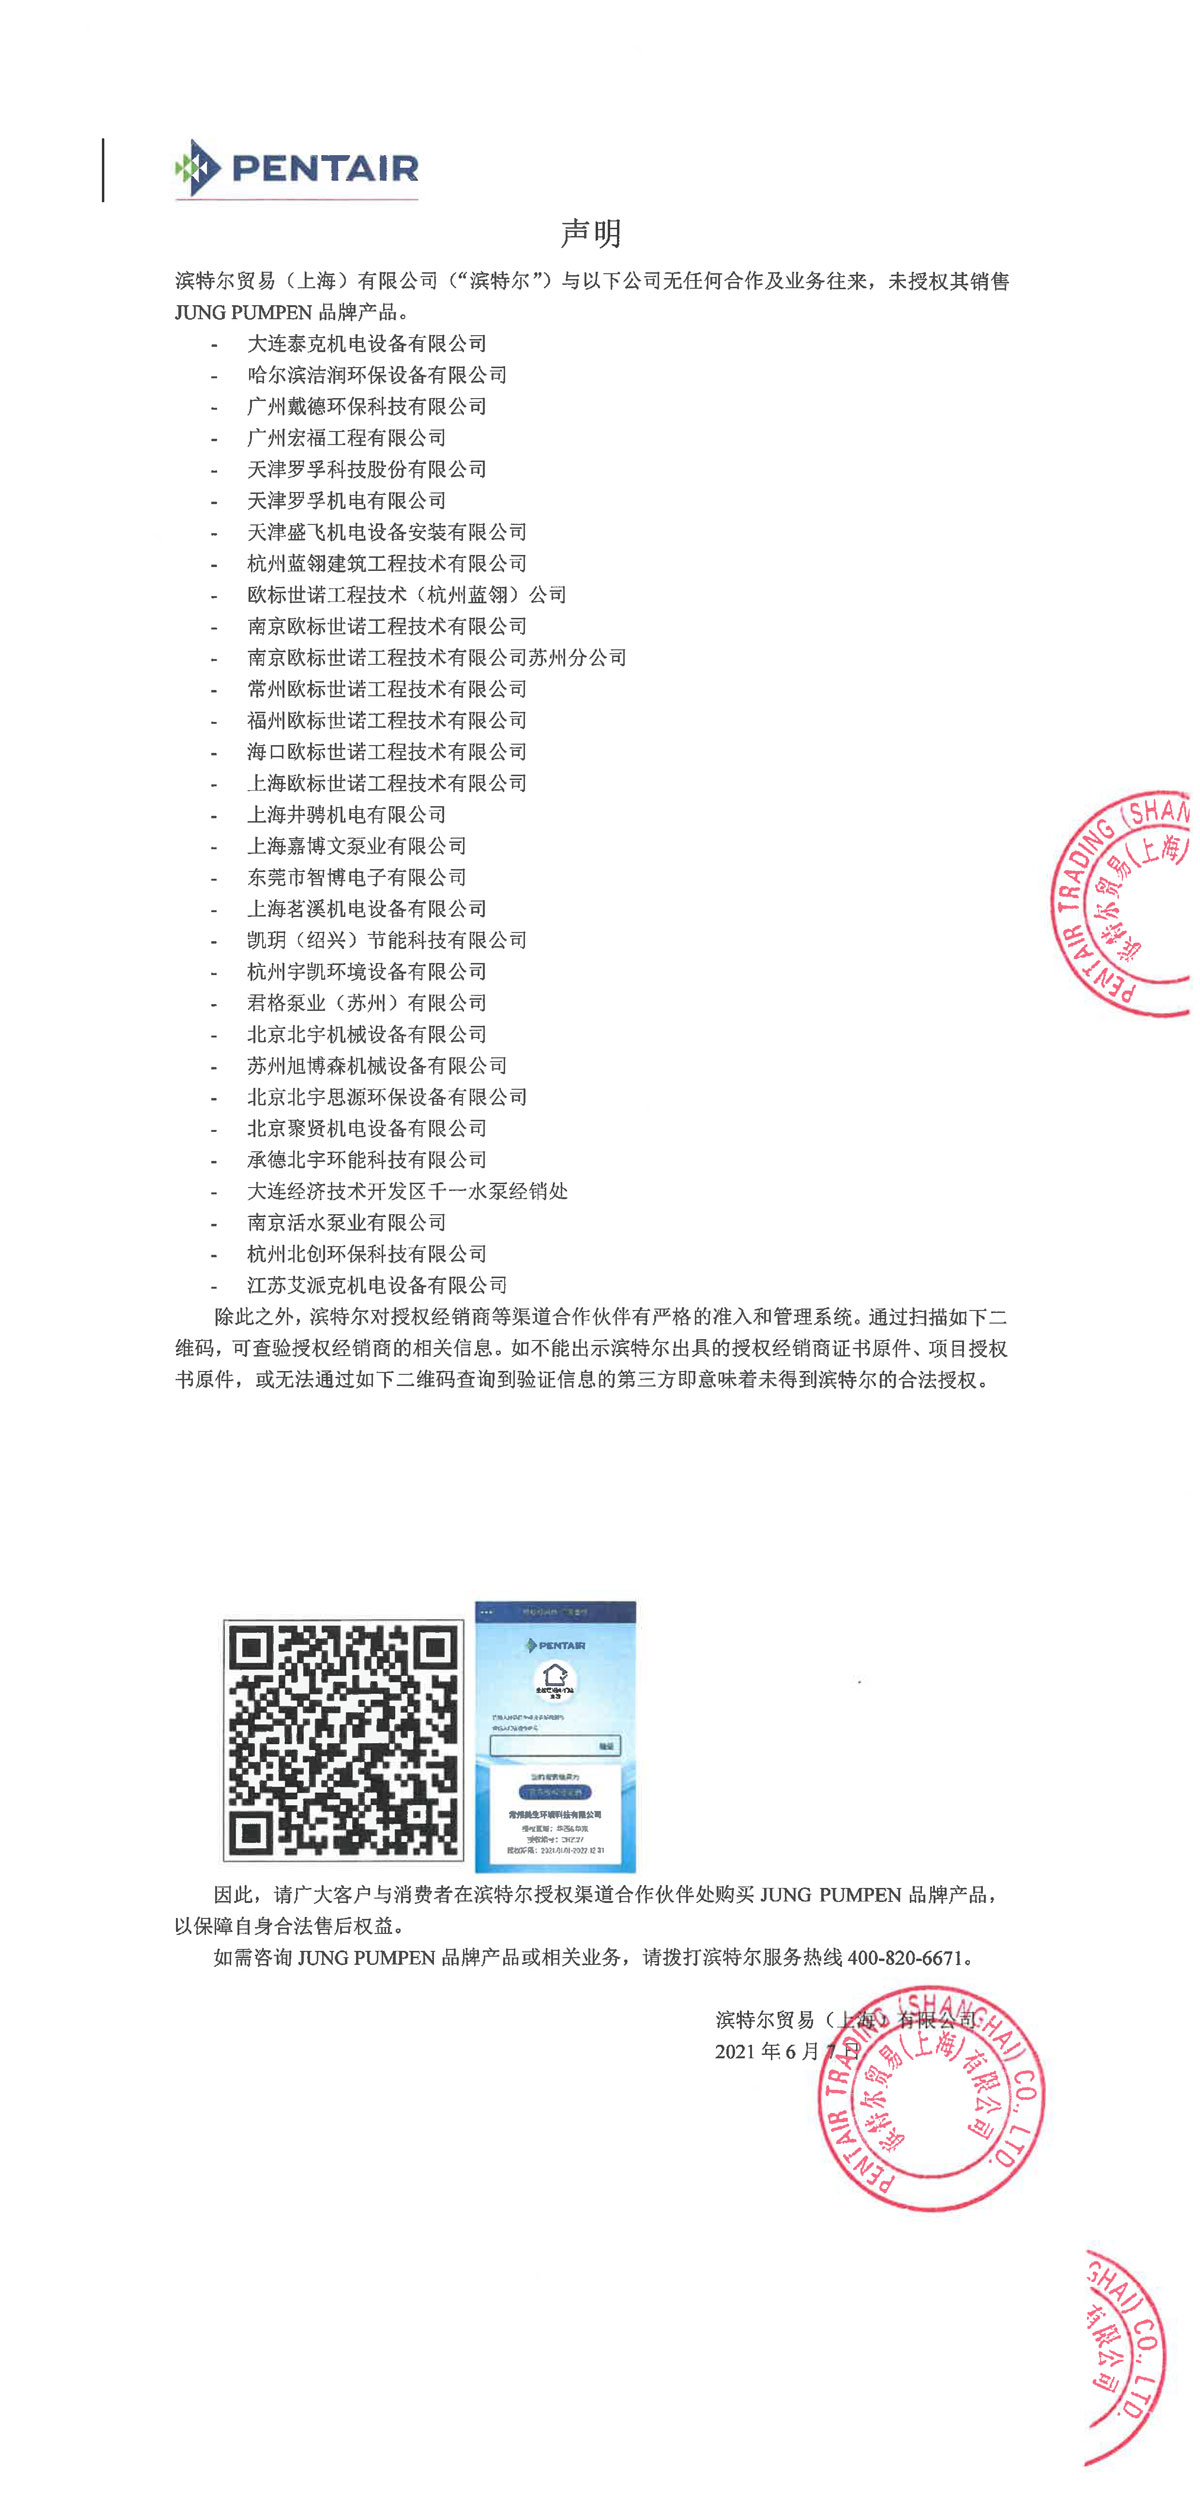 hjc888黄金城(中国)官方网站 - app下载